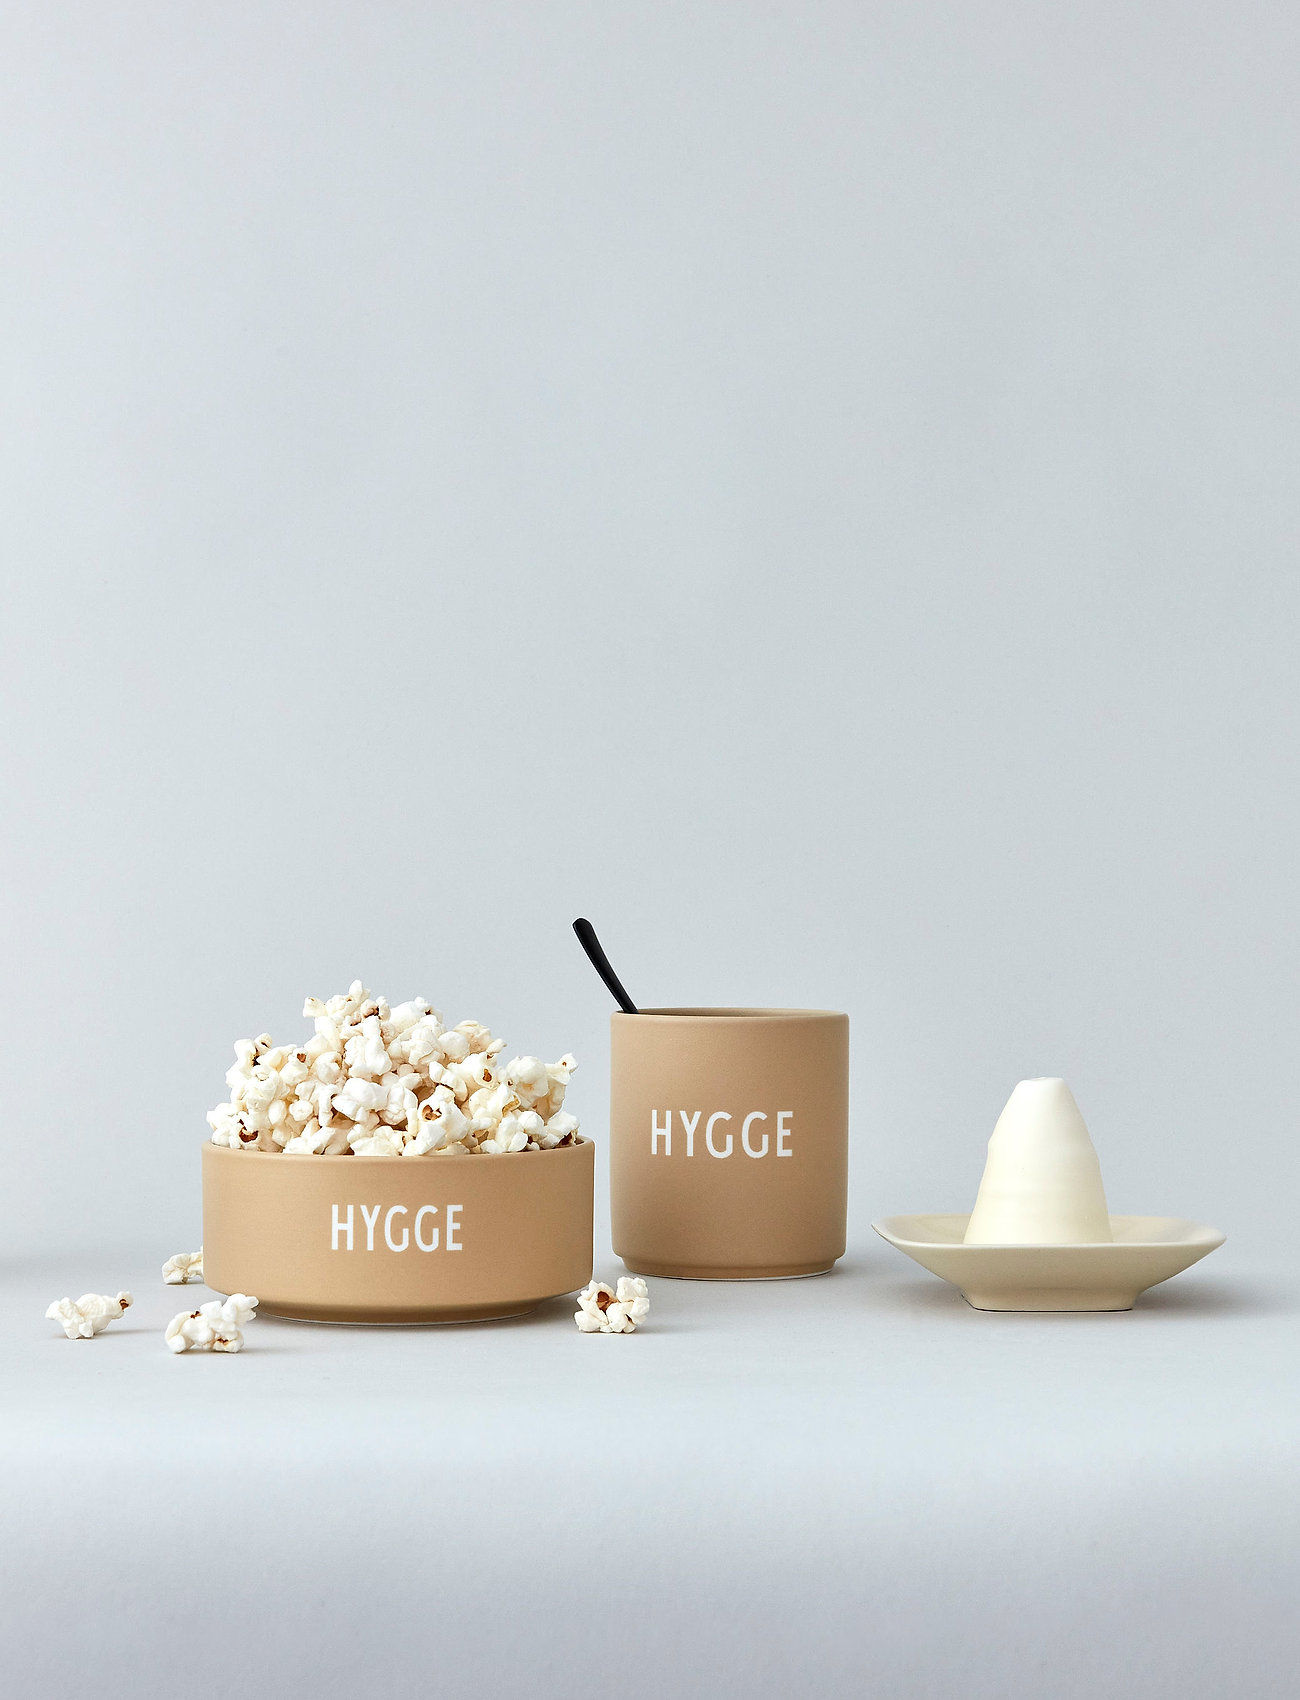 Design Letters - Snack bowl - die niedrigsten preise - beige - 1